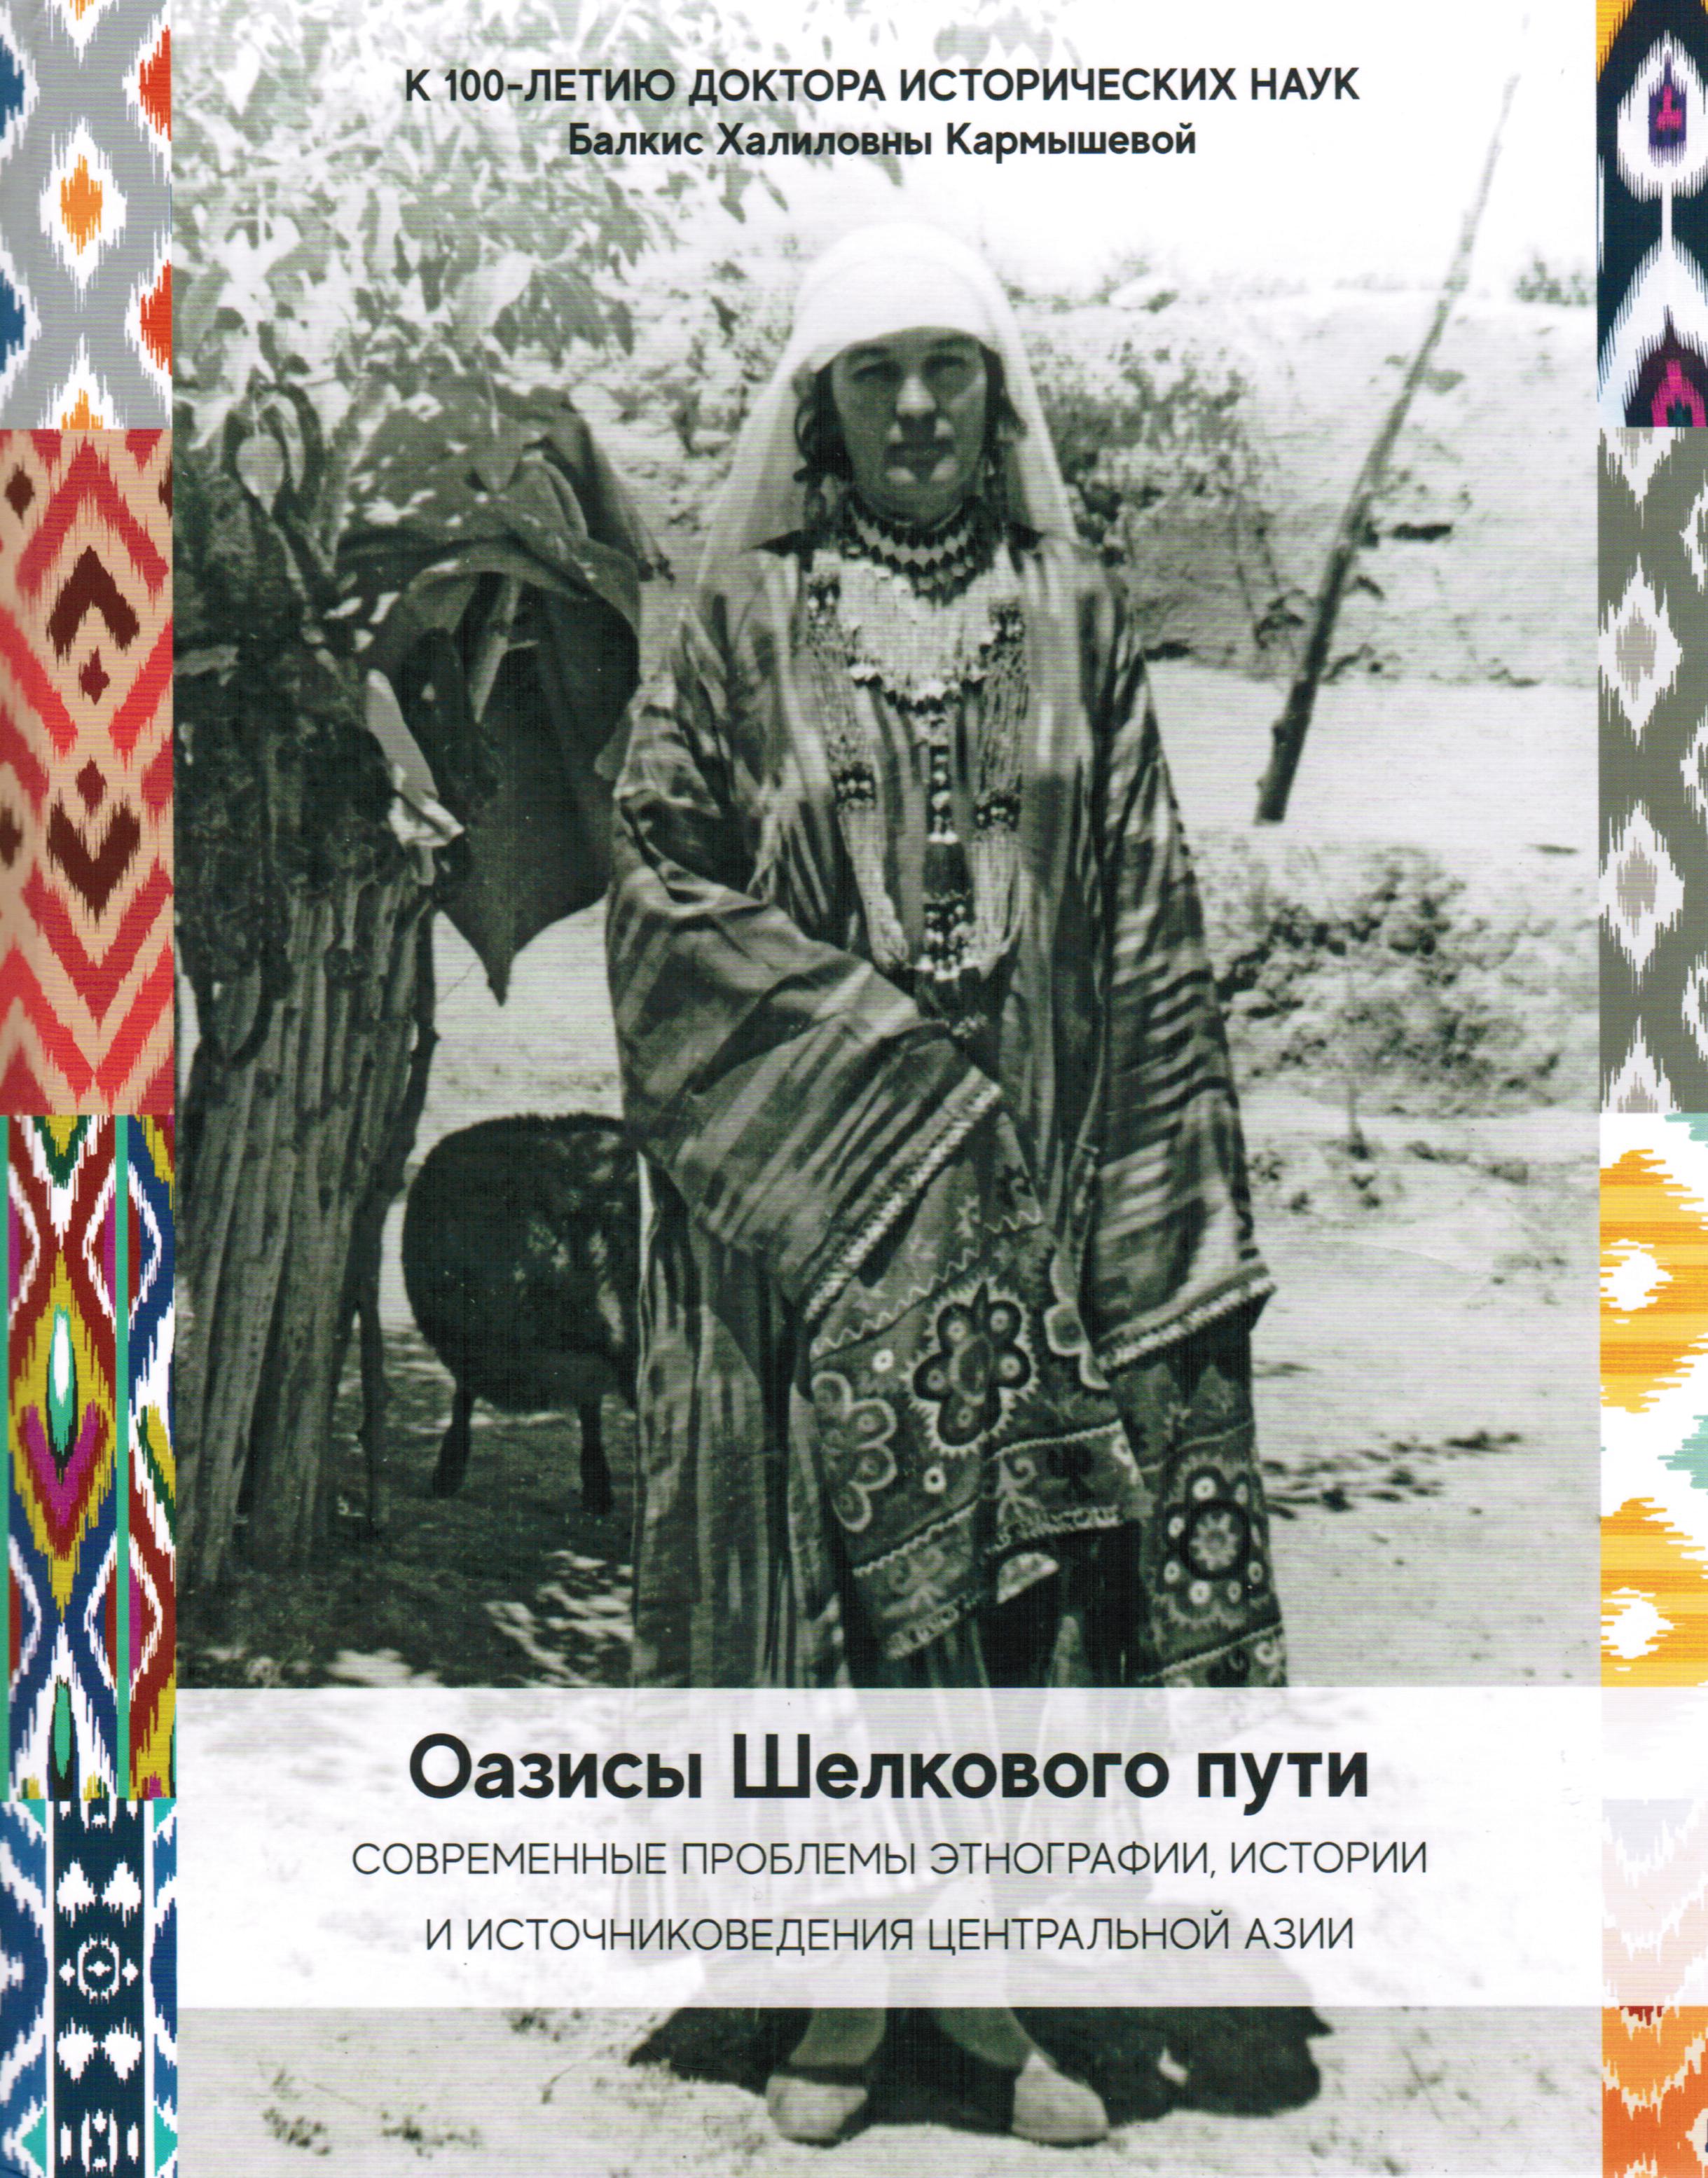 Оазисы Шелкового пути: современные проблемы этнографии, истории и источниковедения народов Центральной Азии